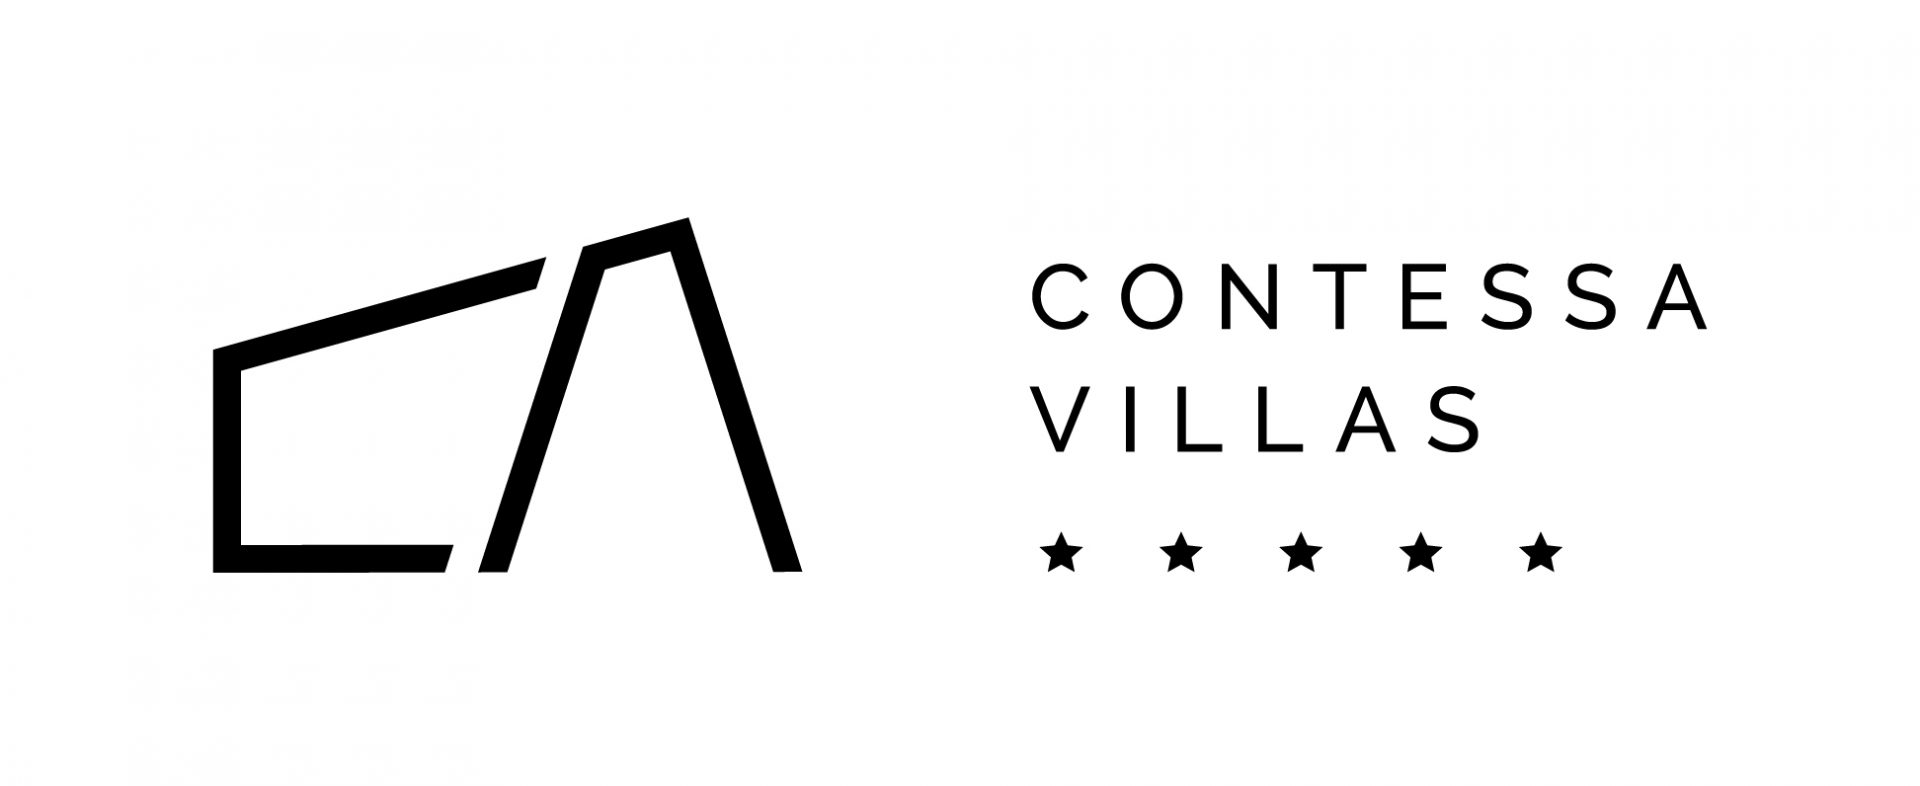 Agencija Contessa Villas individualno pristupa svakom iznajmljivaču te stvara jedinstvenu priču za svaku vilu. Jedna potpuno nova priča je i Luksuzna Vila Luana, koja nudi zanimljiv spoj modernog i tradicionalnog Mediterana.